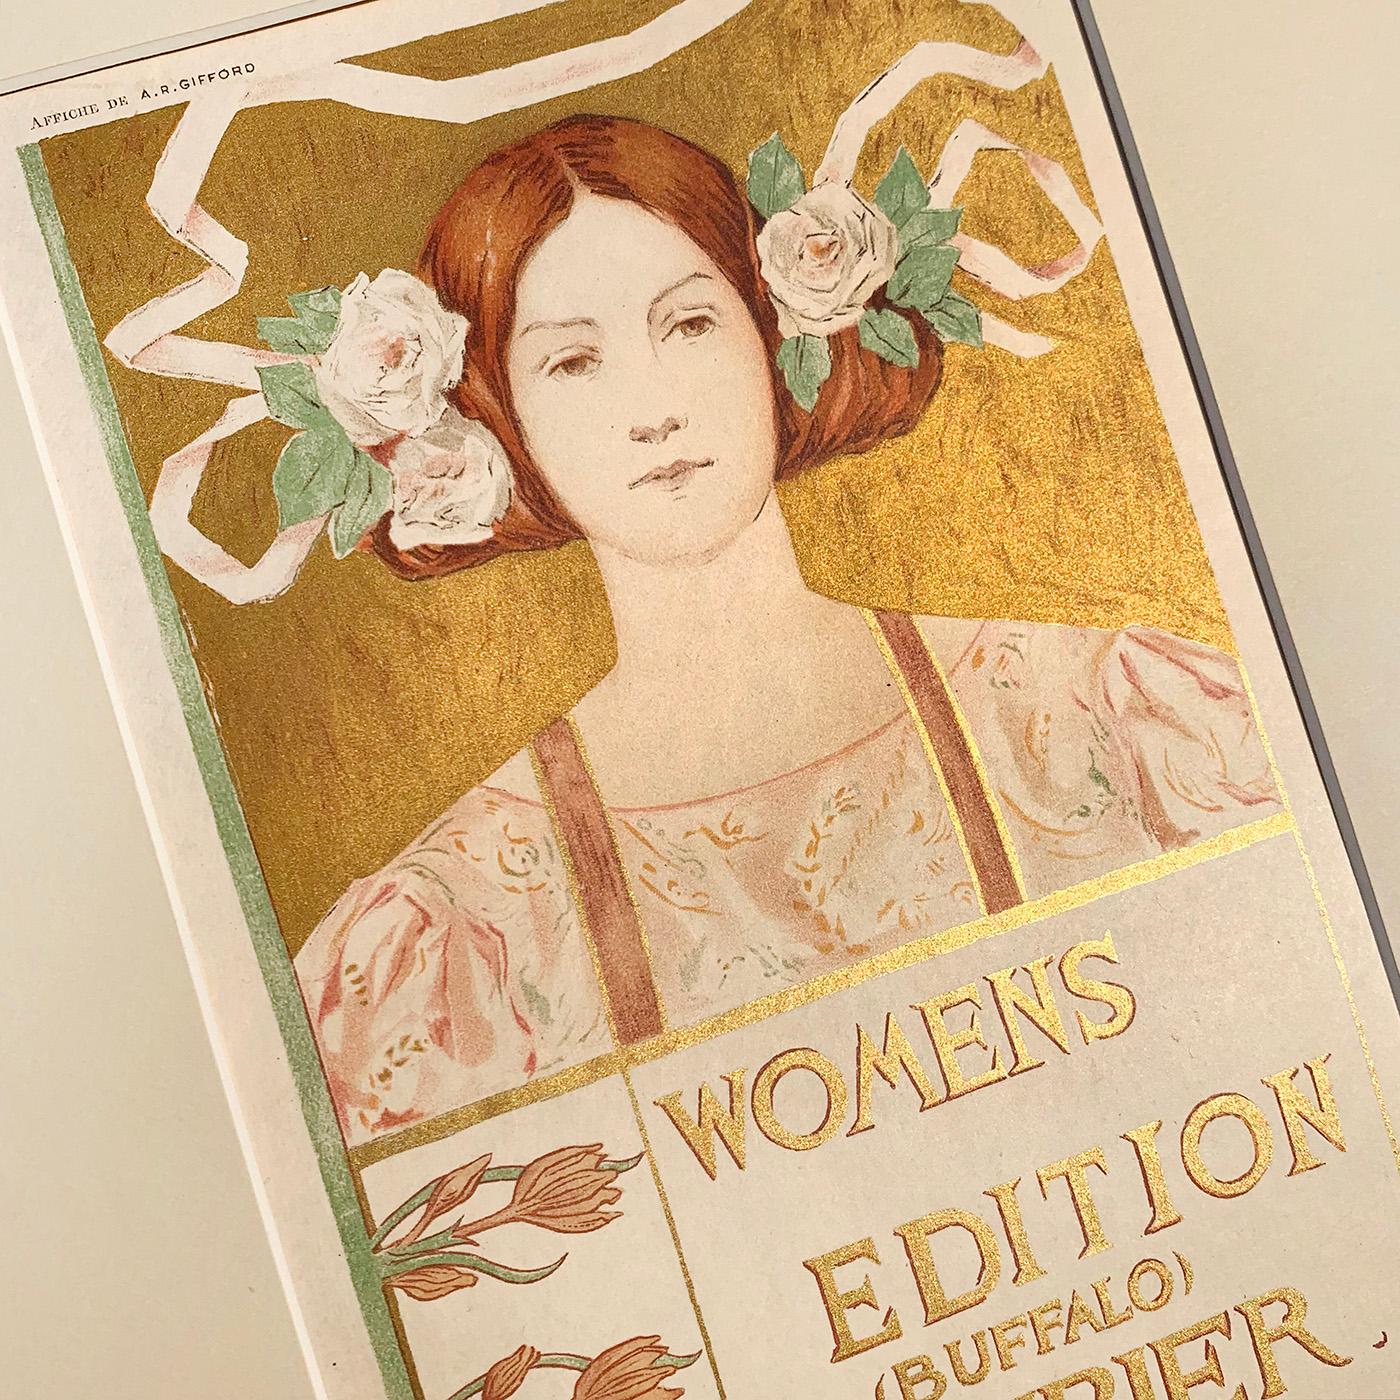 Alice Russell Glennys Women's Edition Buffalo Courier, Lithografie auf Japonpapier von 1897, hergestellt mit einer Platte aus Goldmetallic-Tinte.

Dieses Plakat wurde in verschiedenen Größen und Formaten gedruckt, doch diese Auflage von 25